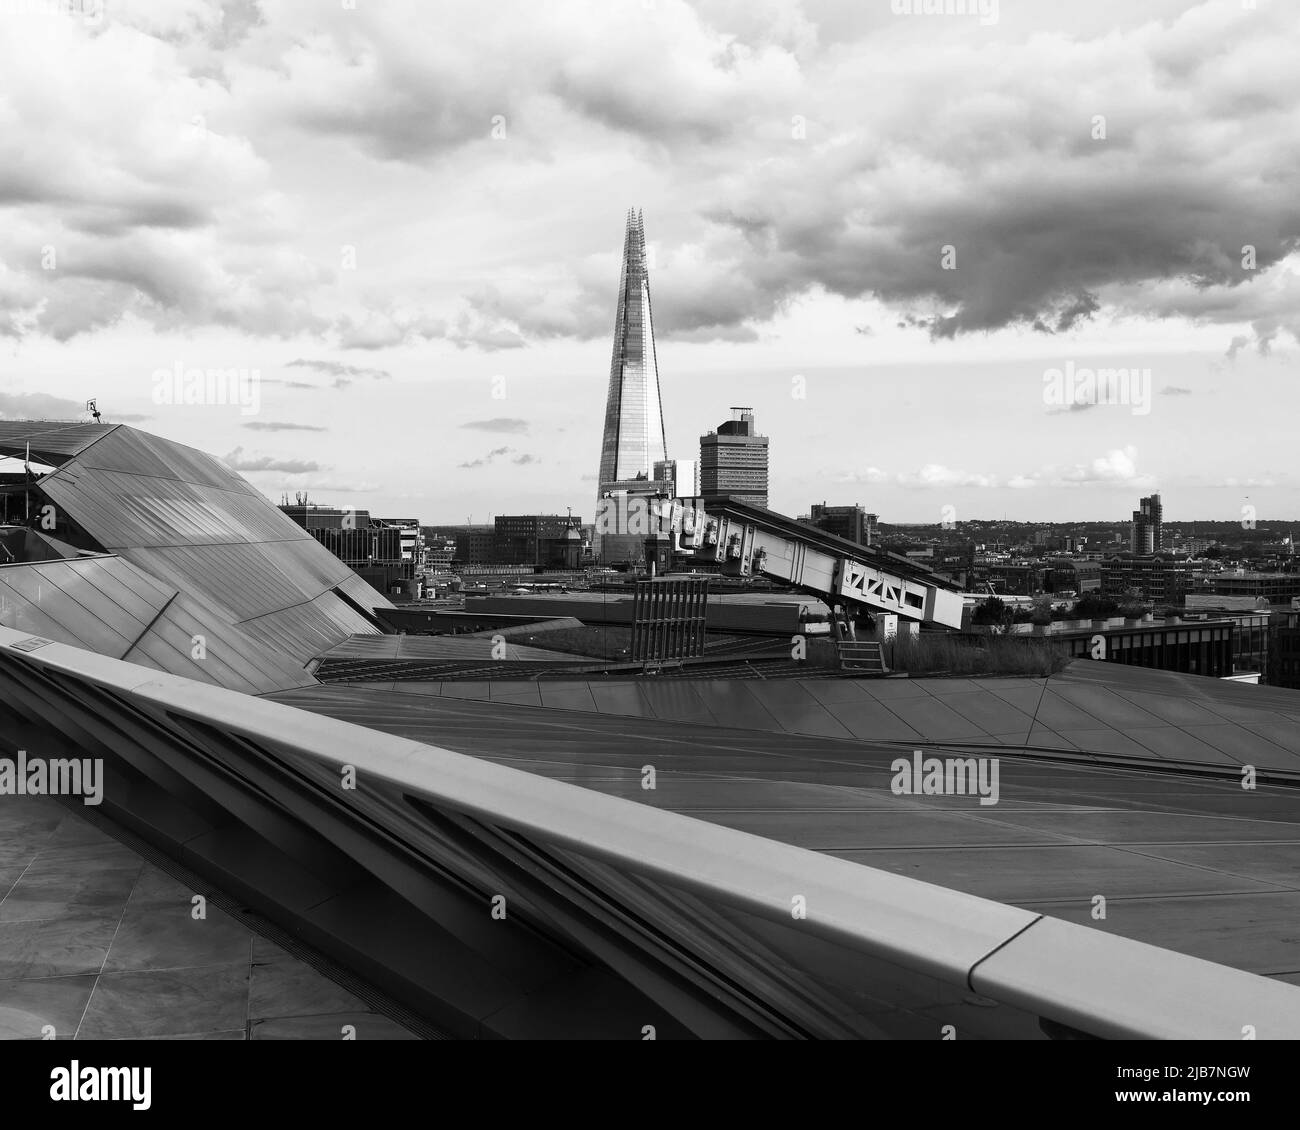 Londres, Grand Londres, Angleterre, 21 mai 2022 : vue d'un nouveau changement vers le gratte-ciel de Shard. Monochrome. Banque D'Images